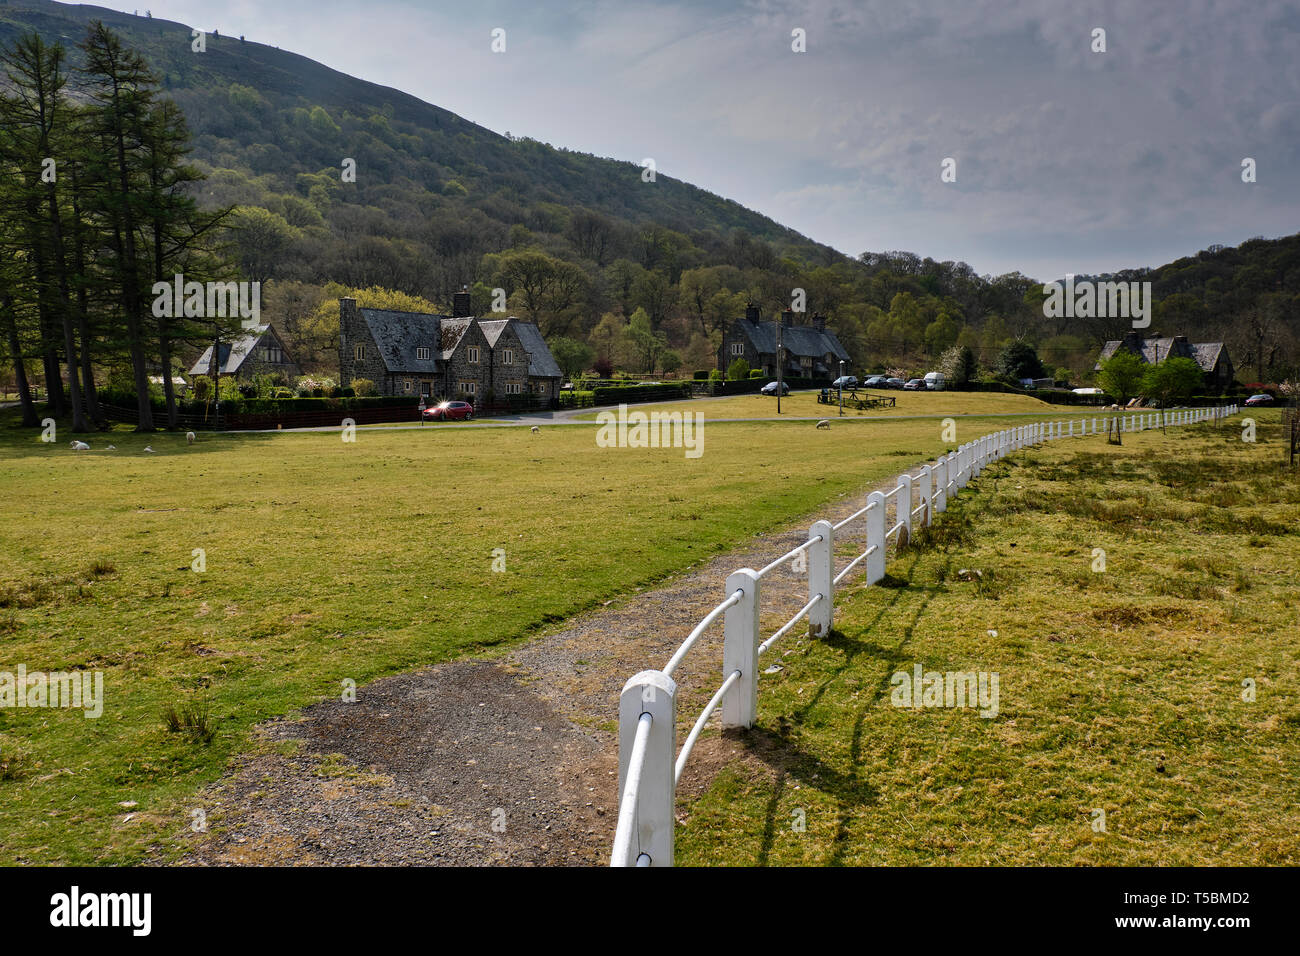 Elan Village at Elan Valley, Powys, Wales Stock Photo